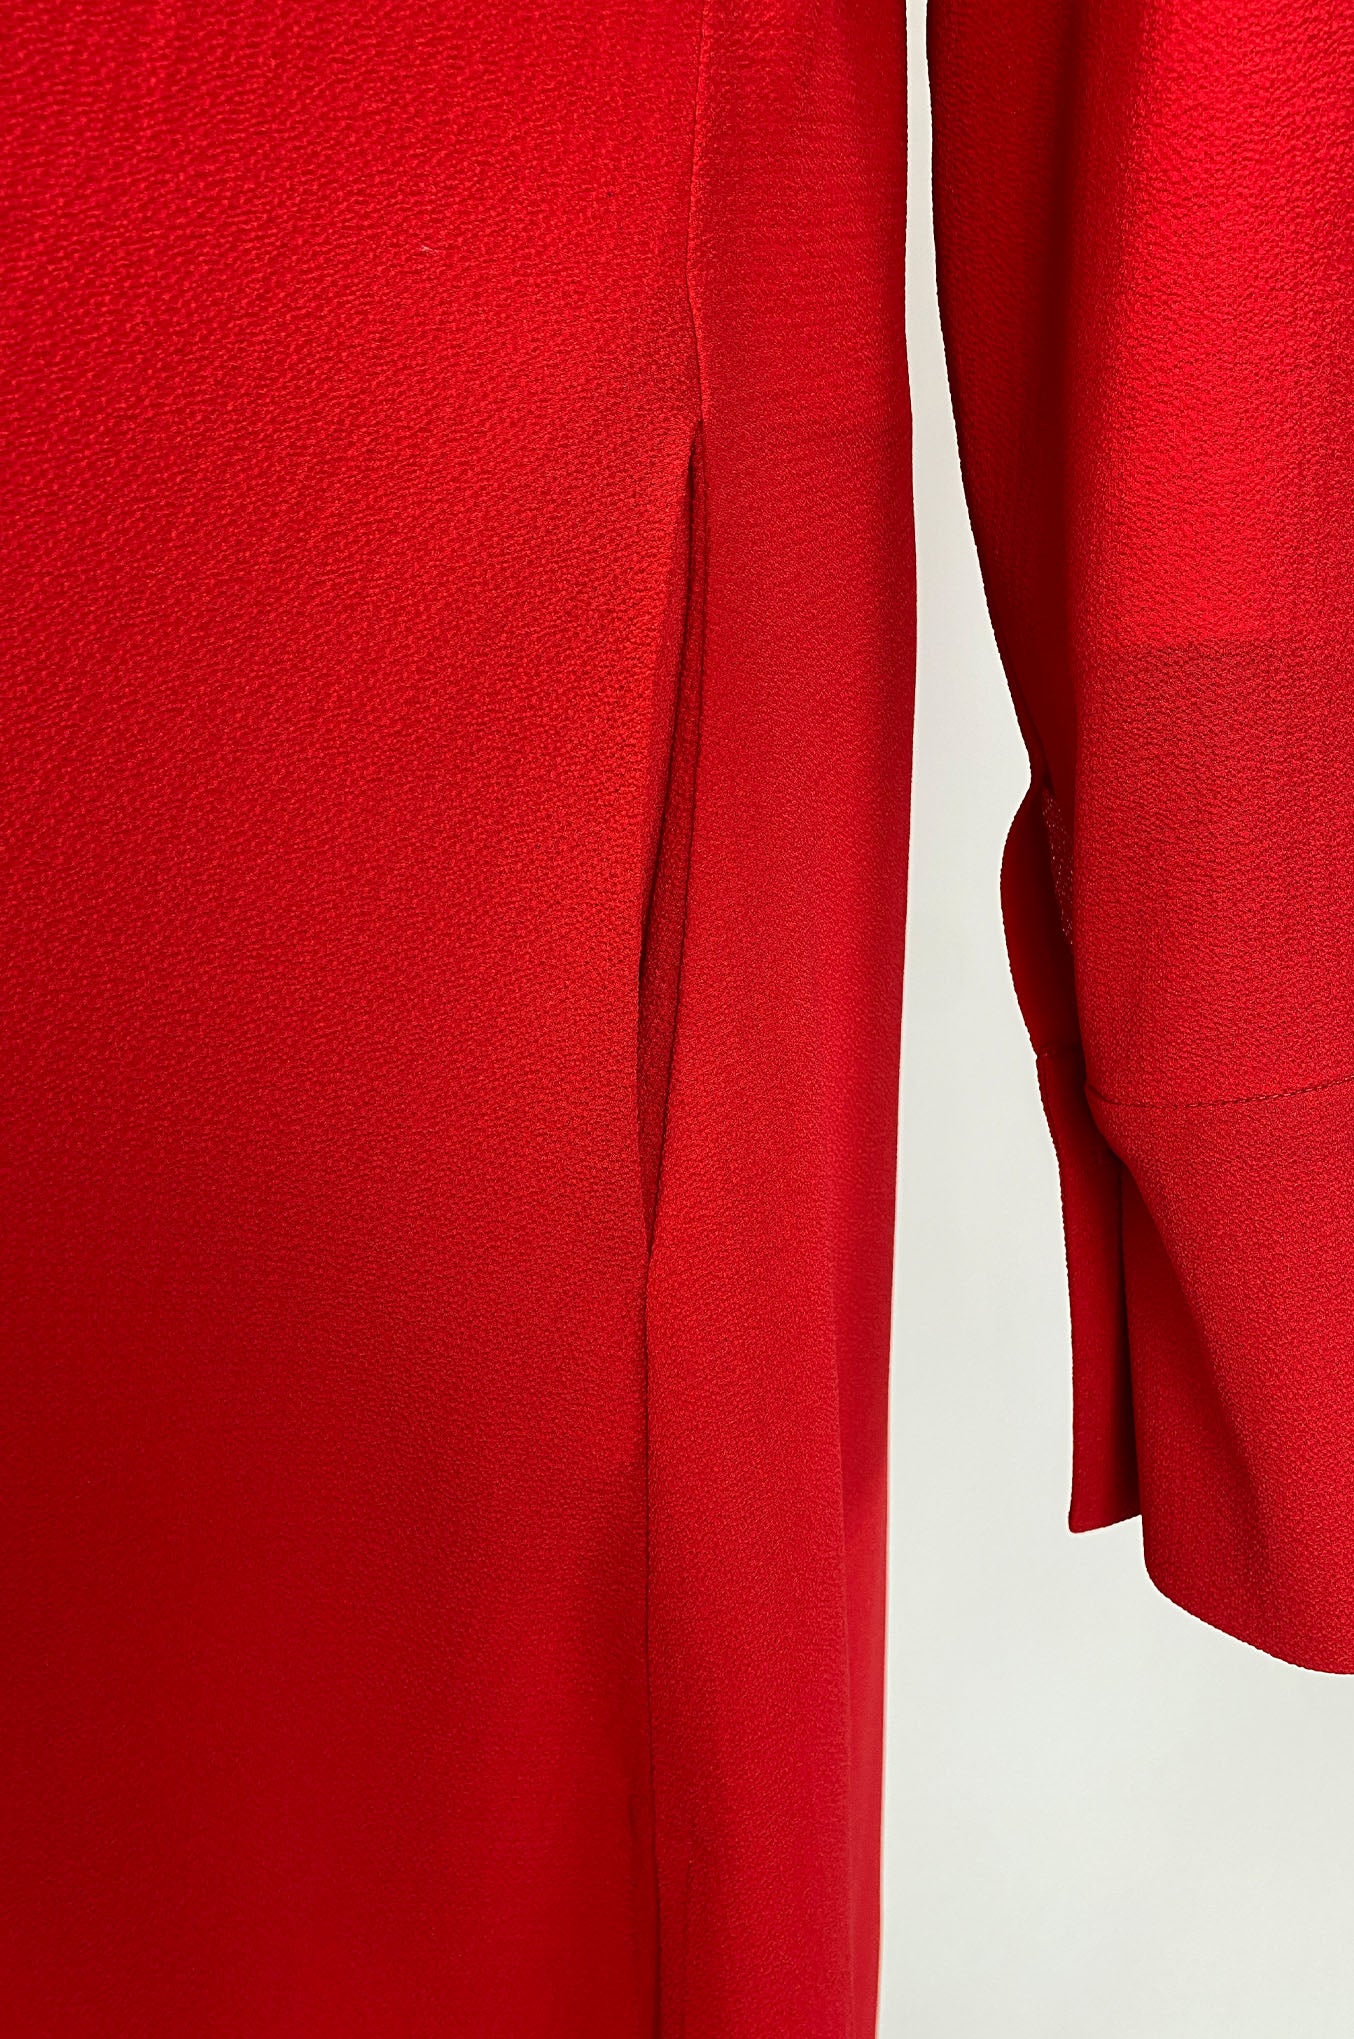 SHIRT DRESS "RED SUN"